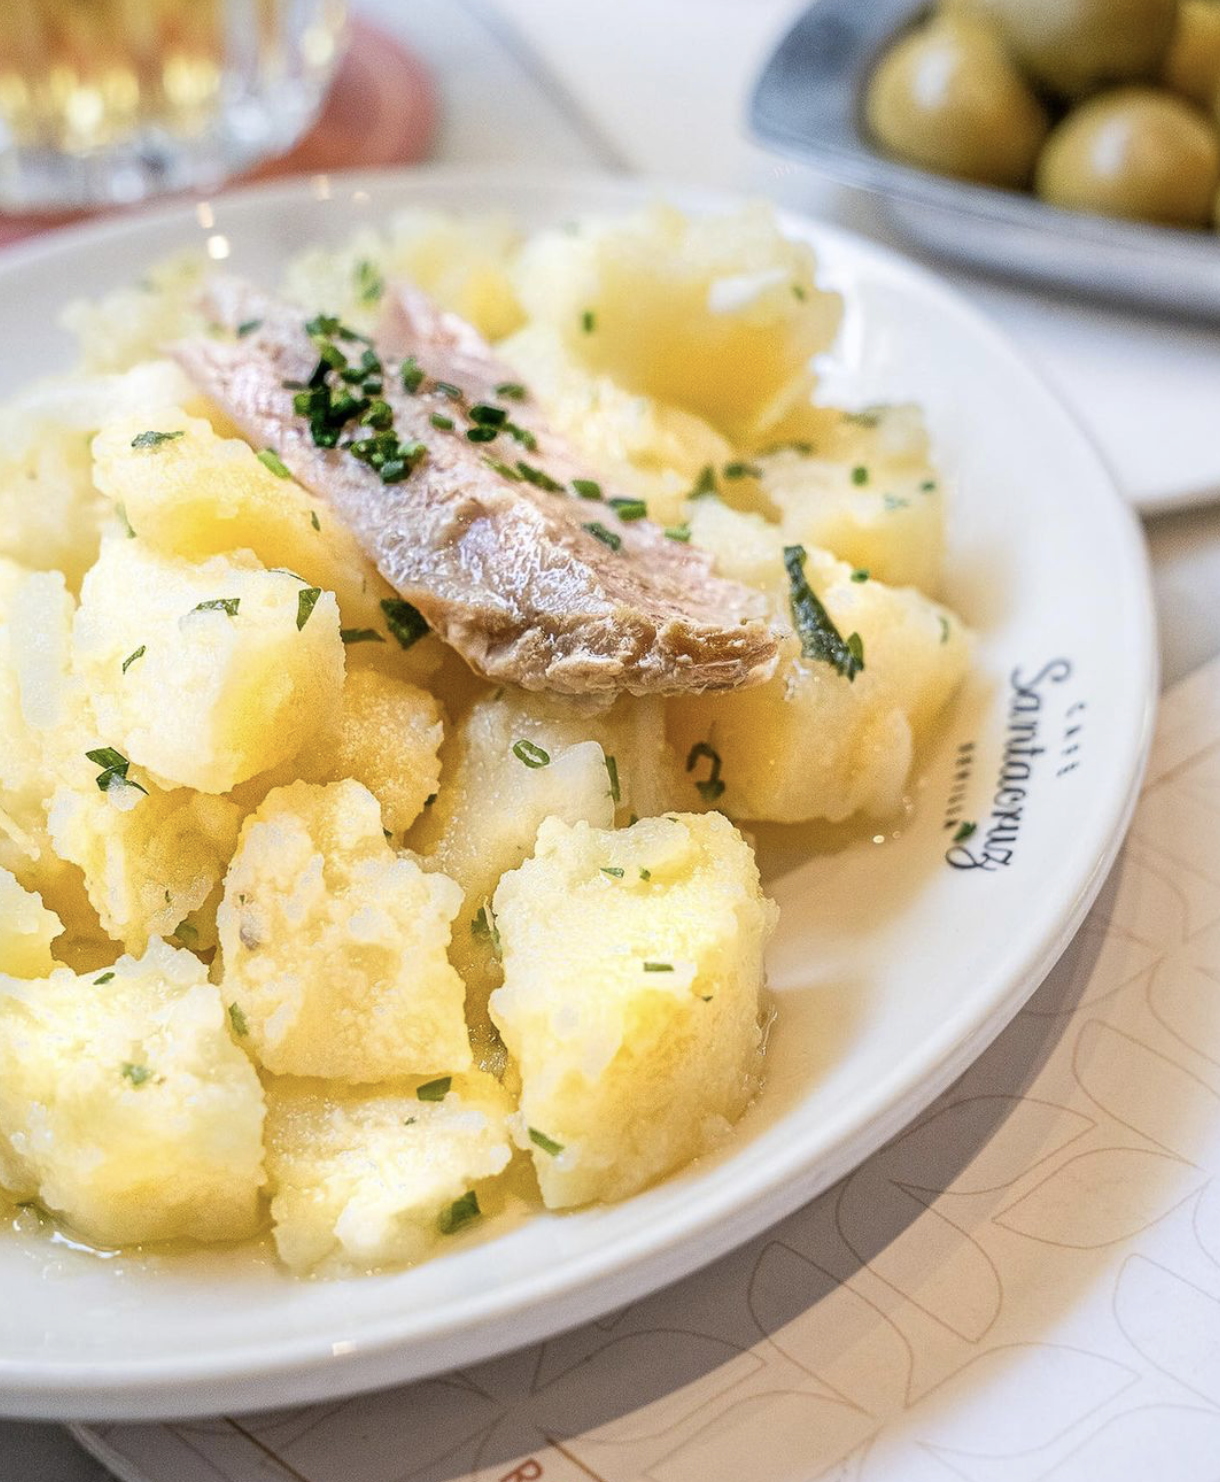 Potatoes seasoned with Jerez vinegar and canutera tuna